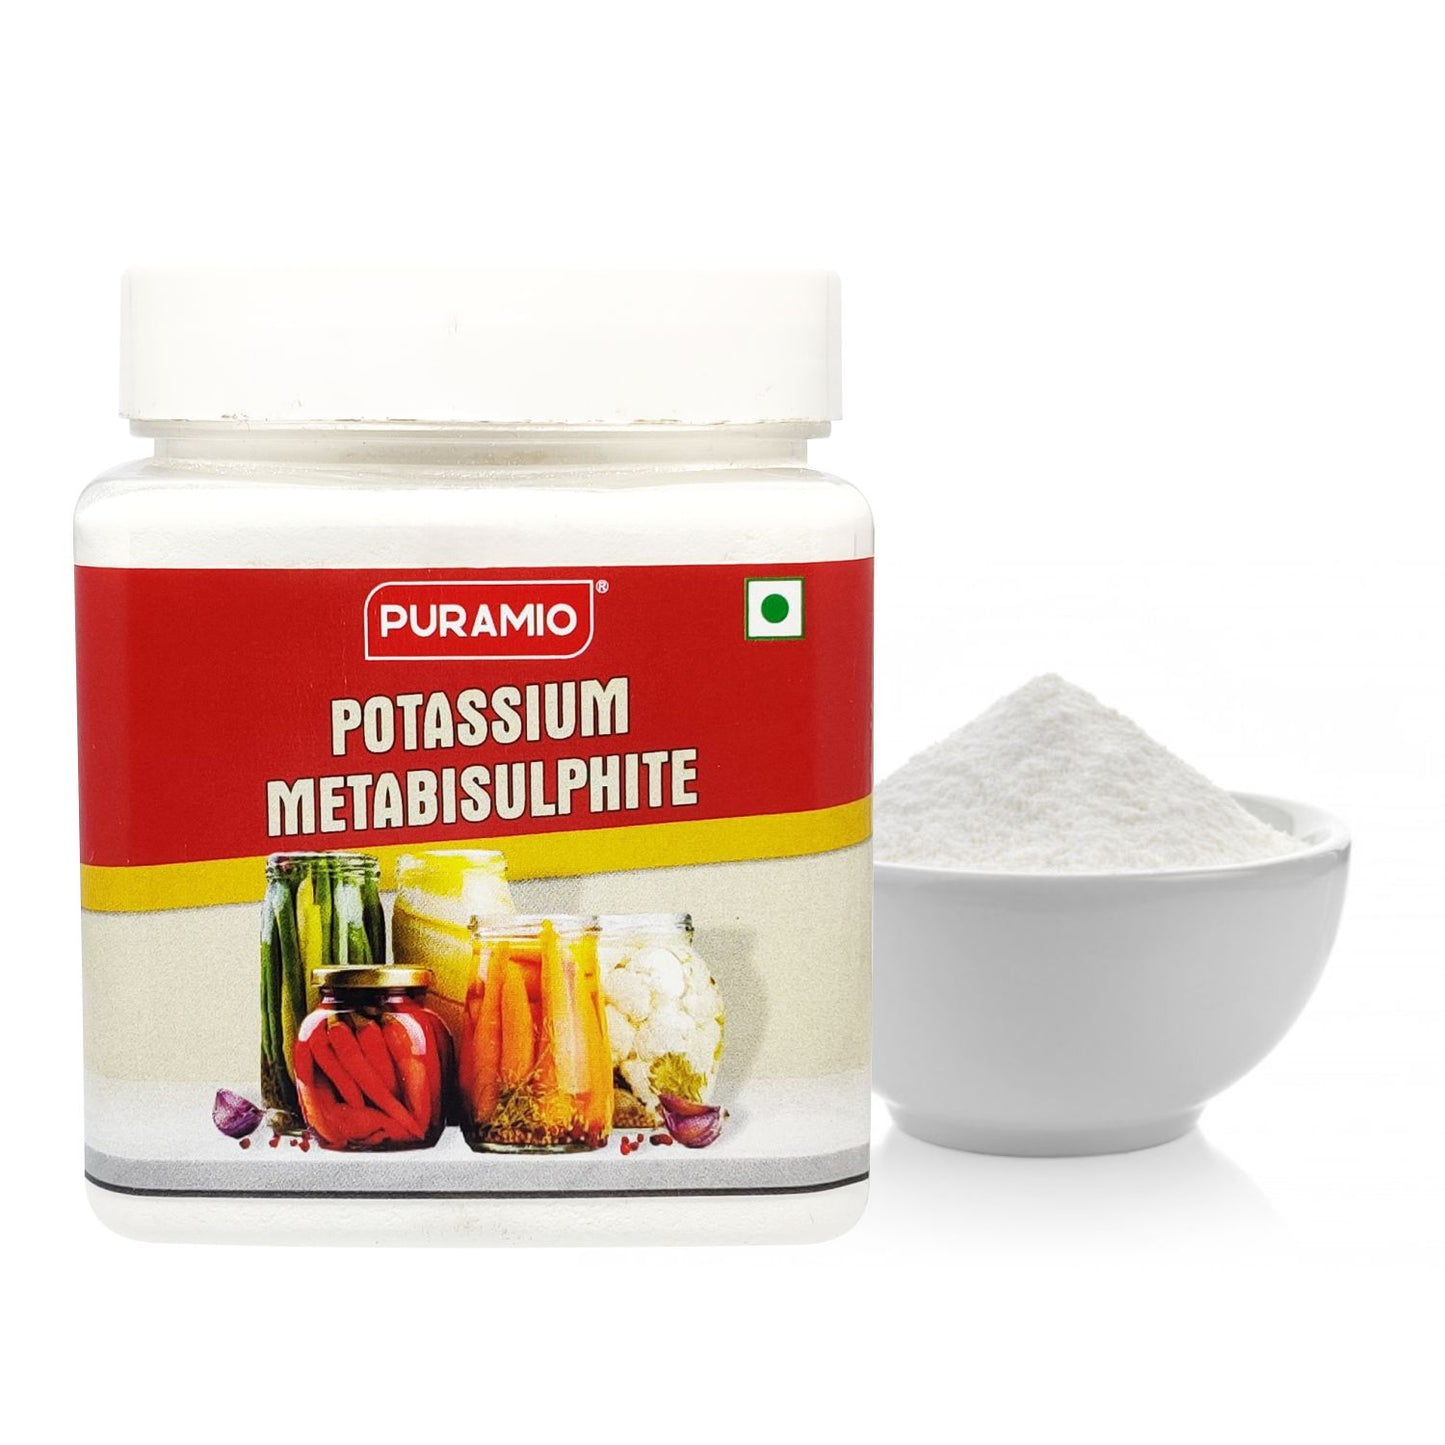 Puramio Potassium Metabisulphite